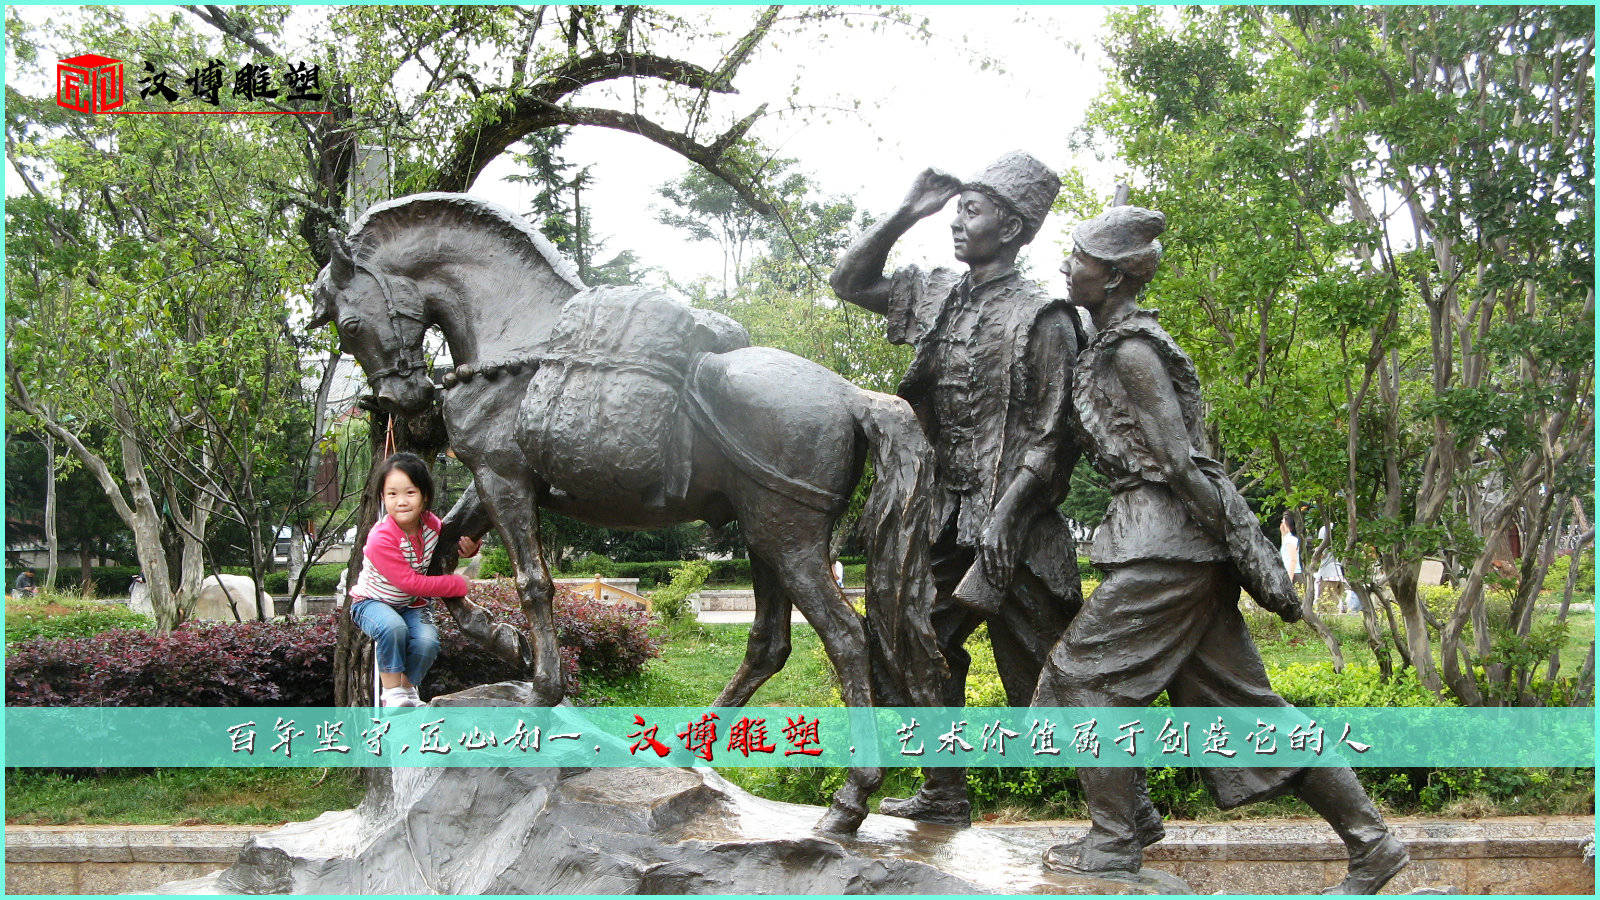 茶马古道文化主题雕塑，延续了马帮几千年的辉煌和沧桑